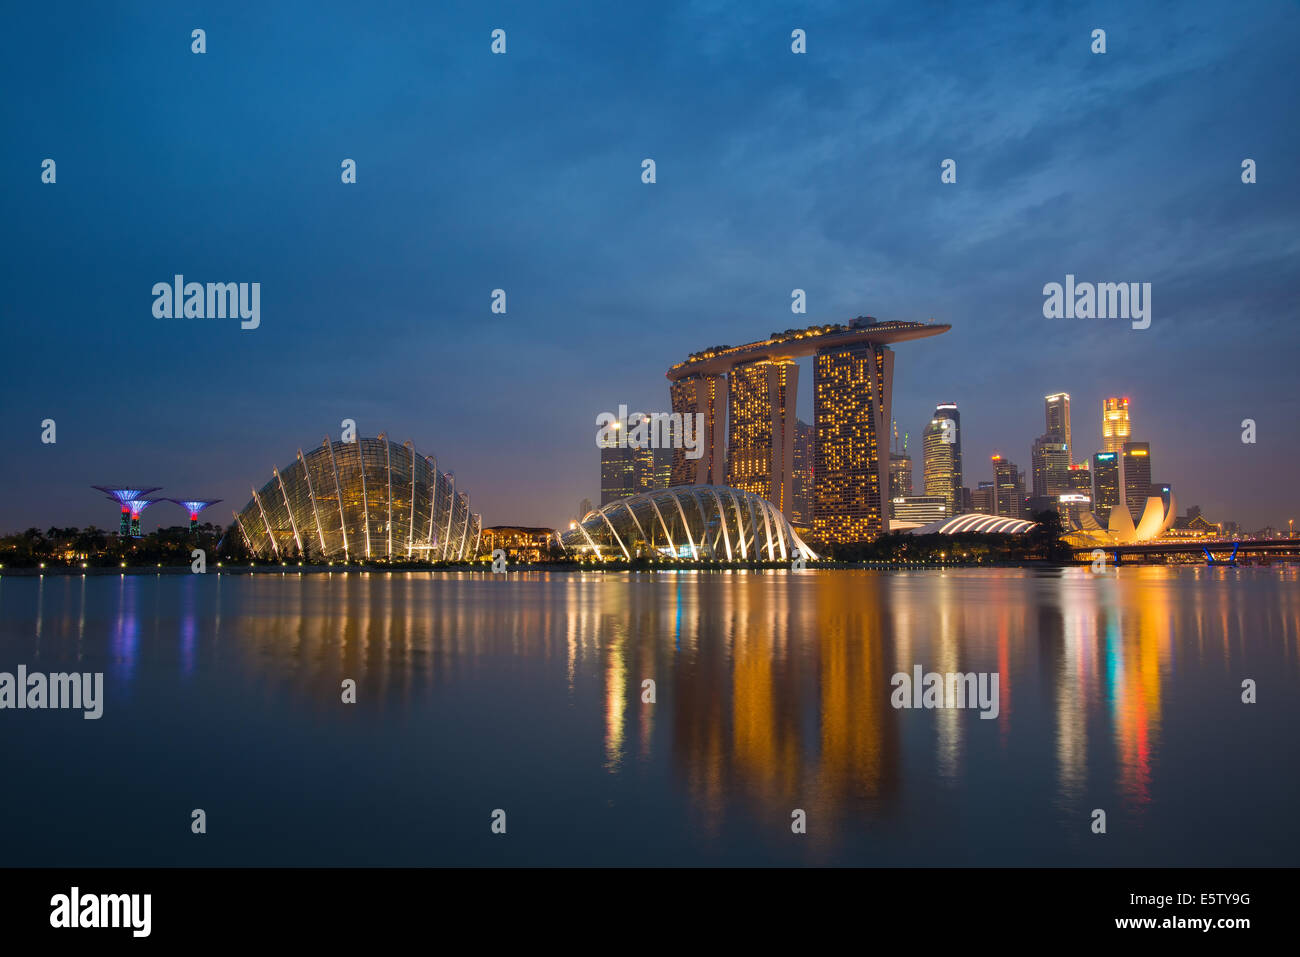 En el crepúsculo del horizonte de Singapur, Marina Bay area. La prevalente en la imagen son hitos de la Marina Bay Sands y jardines junto a la bahía Foto de stock